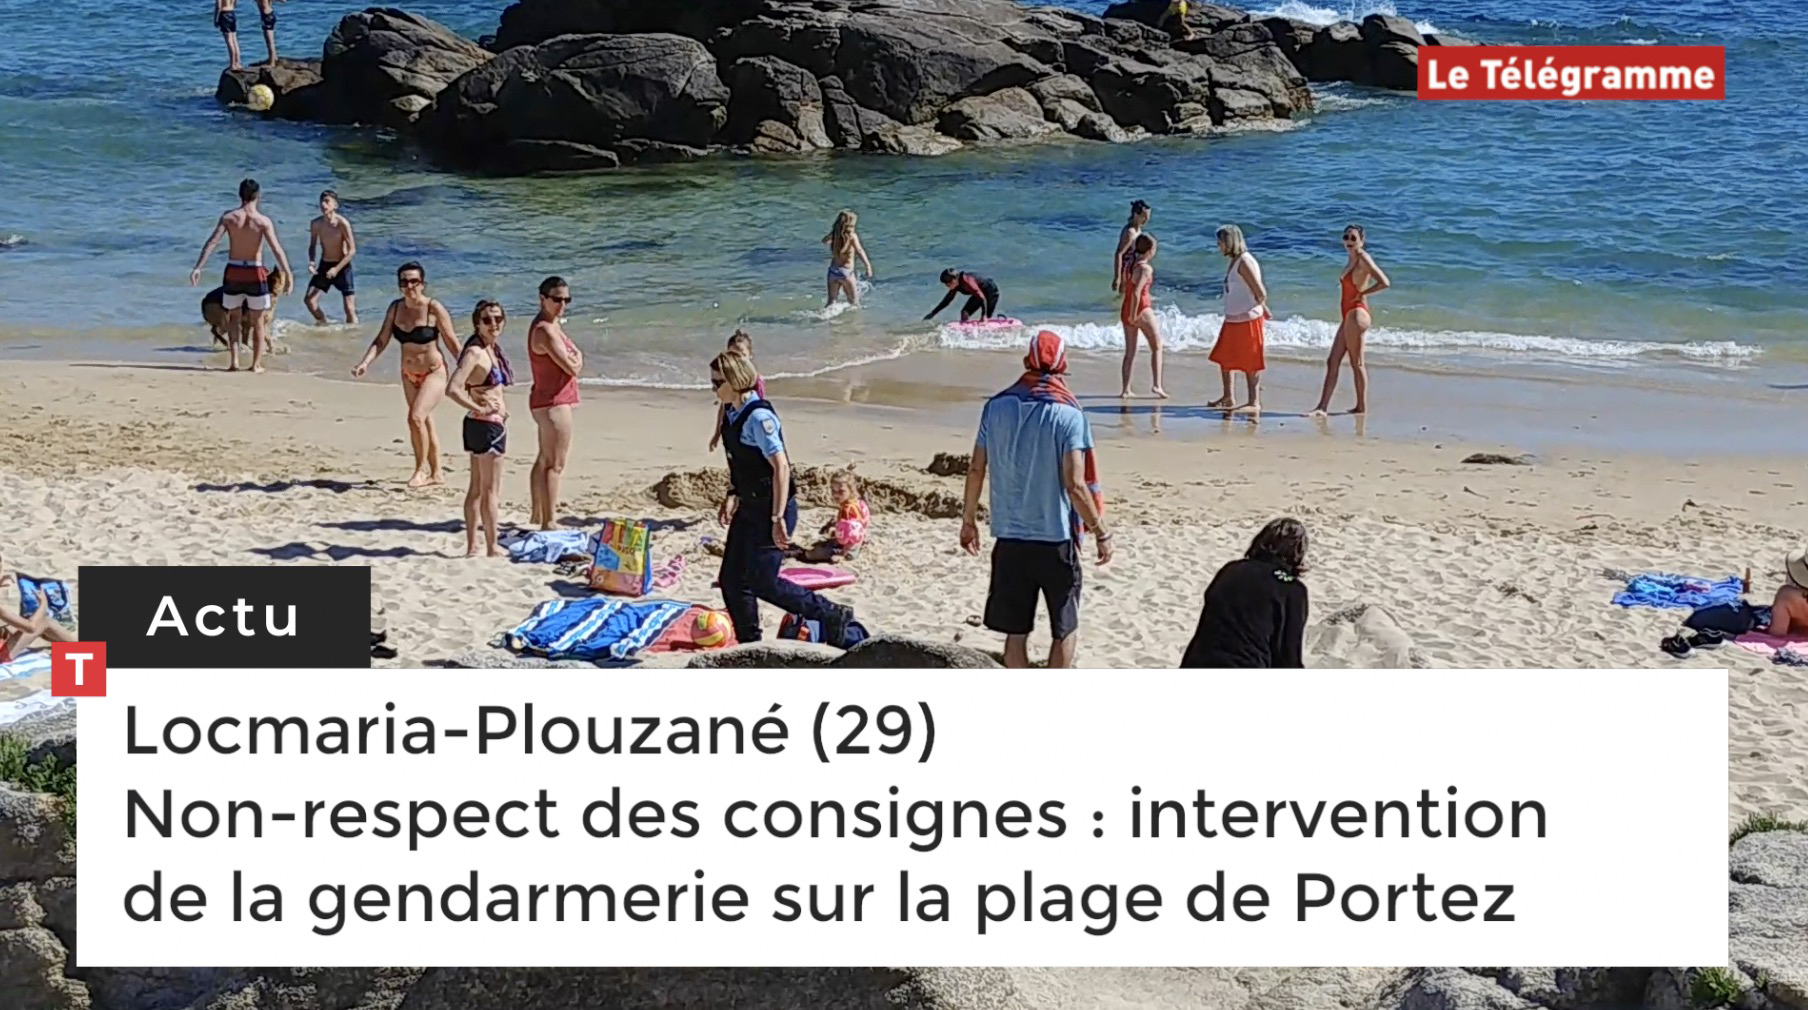 Non-respect des consignes : intervention de la gendarmerie sur la plage de Portez, à Locmaria-Plouzané (29) (Le Télégramme)